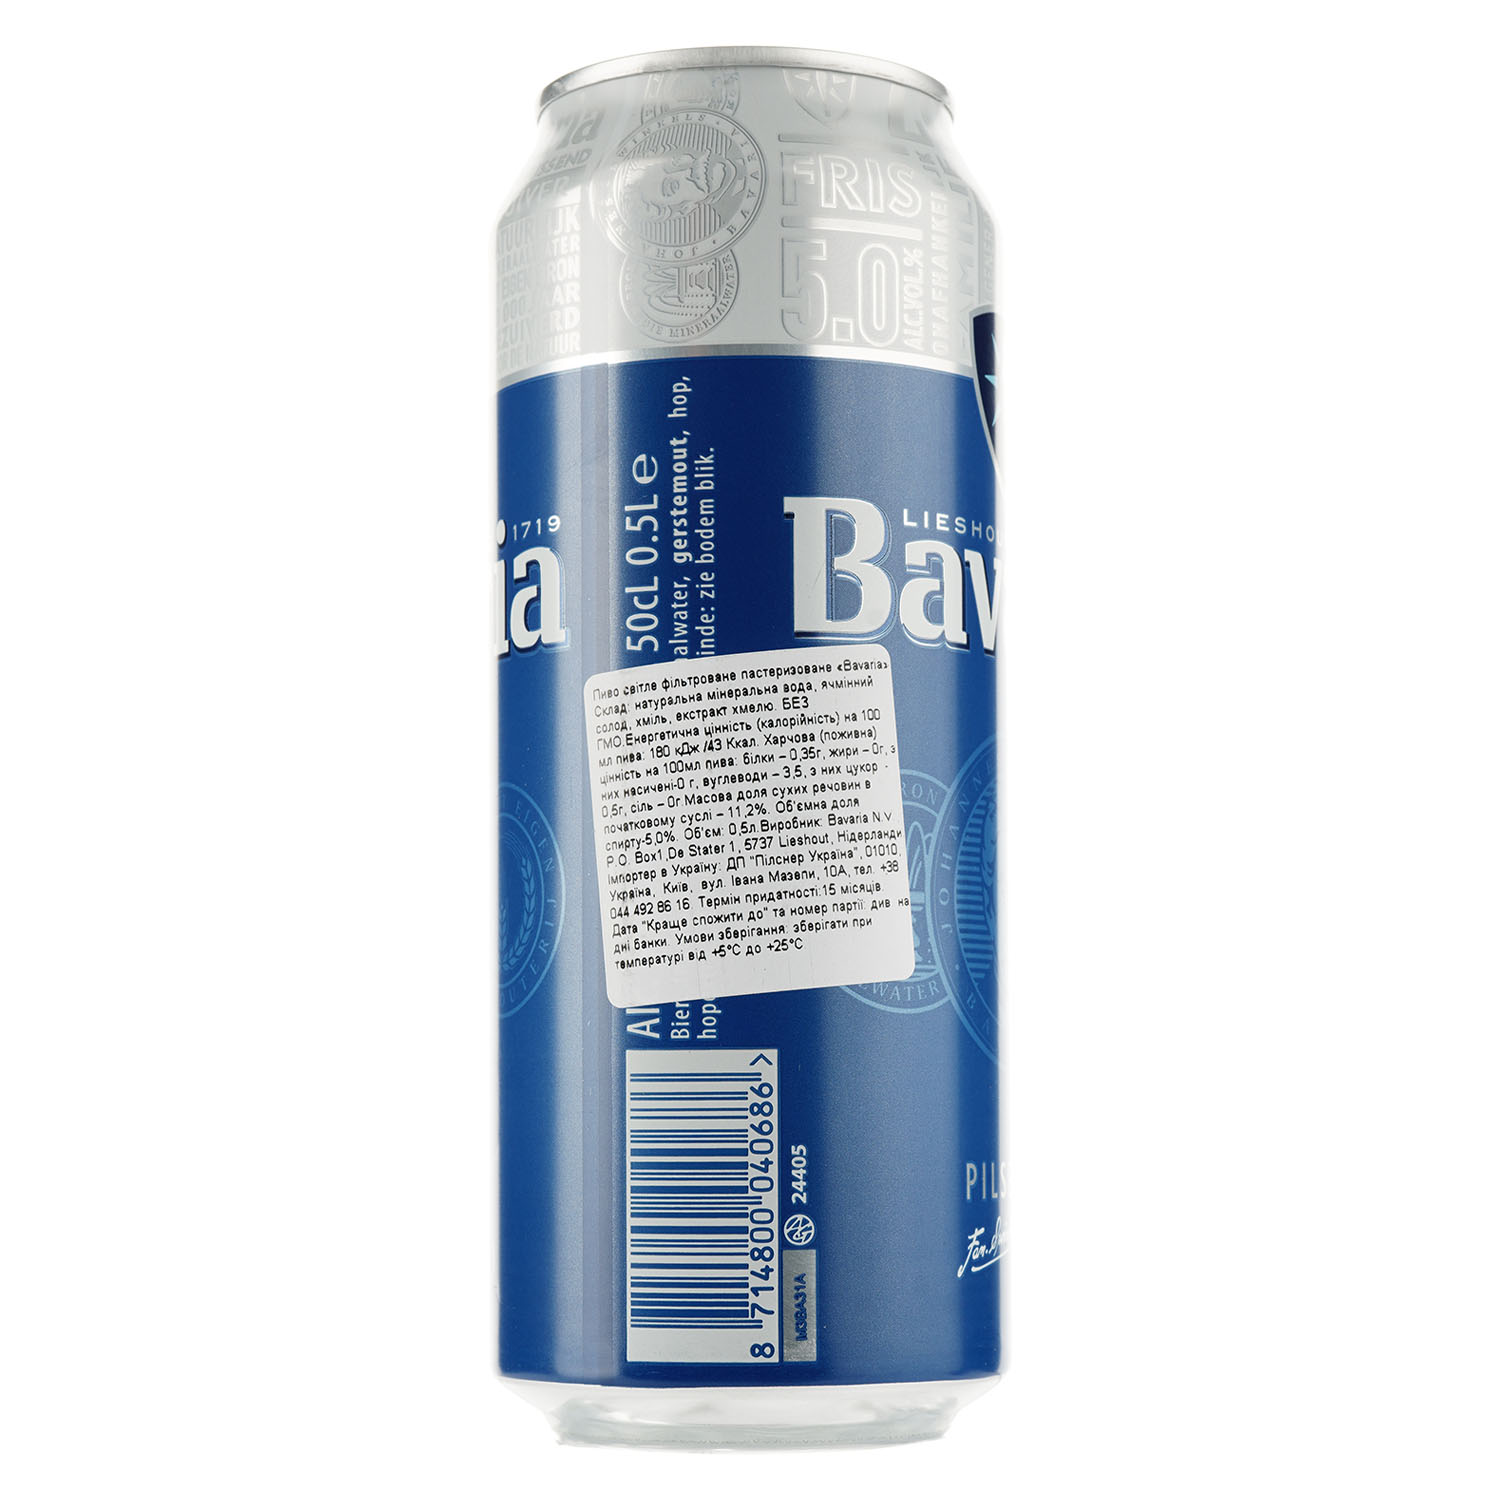 Пиво Bavaria, світле, фільтроване, 5%, з/б, 0,5 л - фото 3